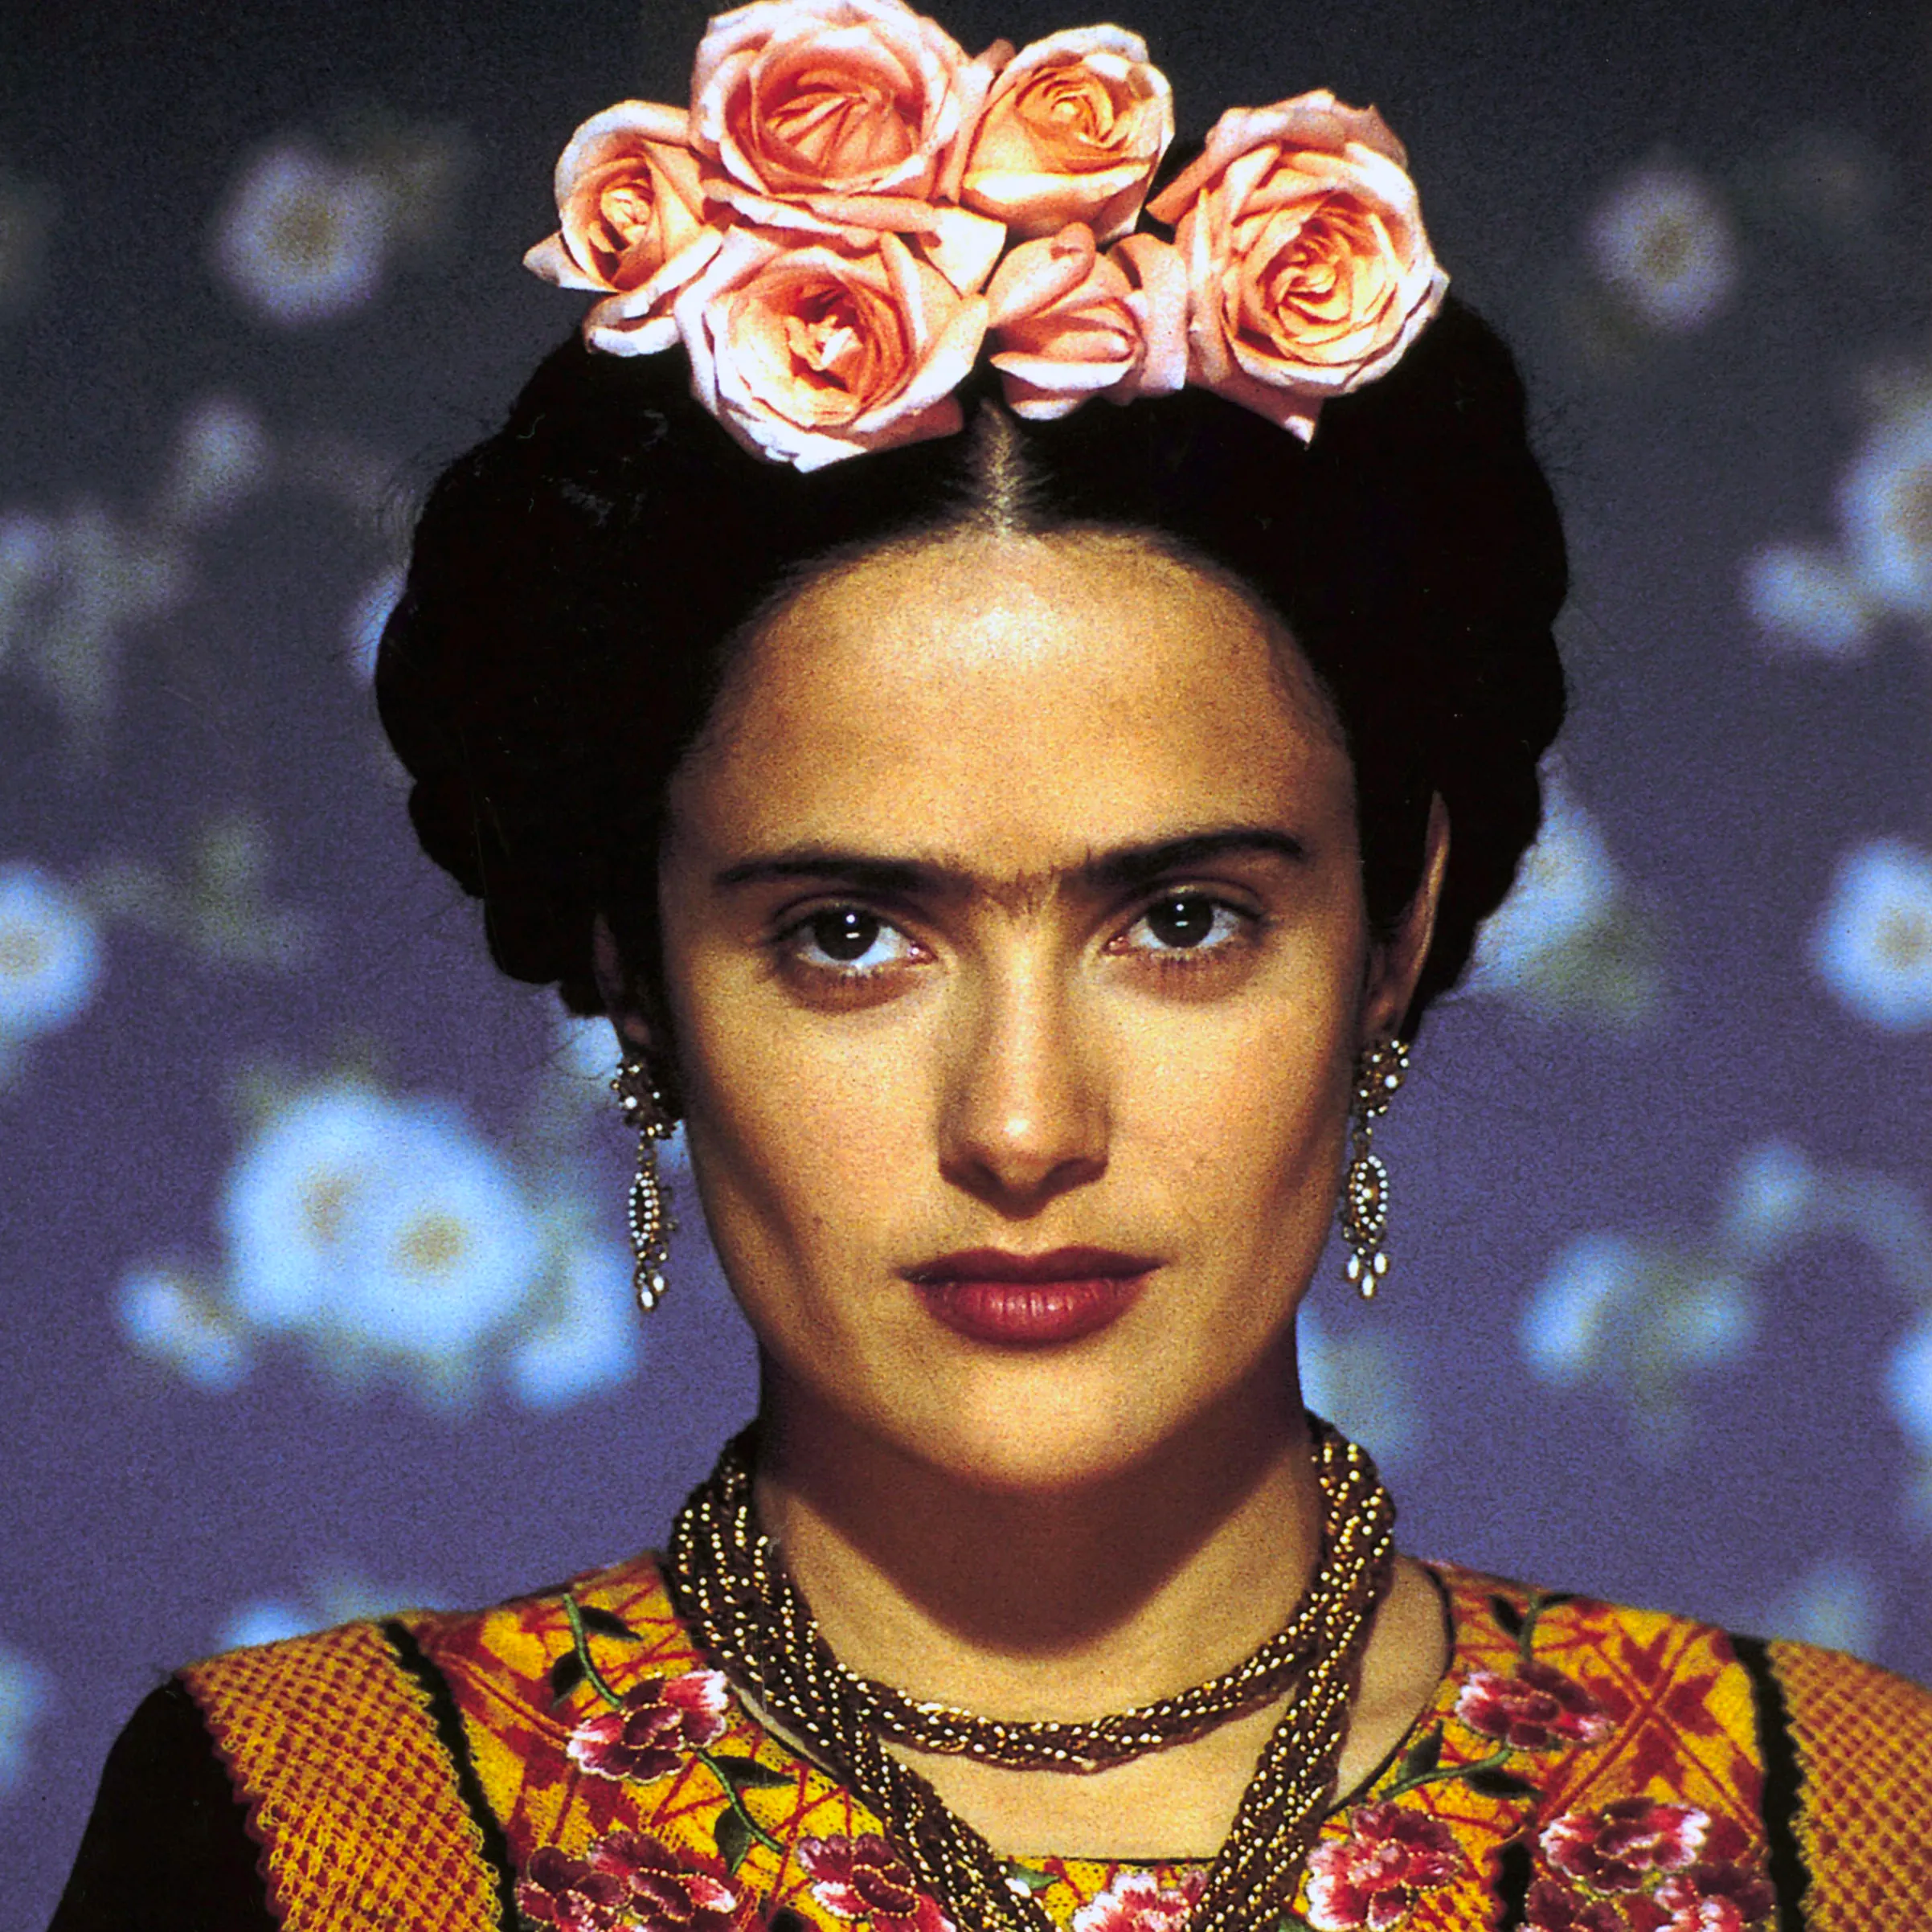 Desperado movie still, 1995. Salma Hayek as Carolina.